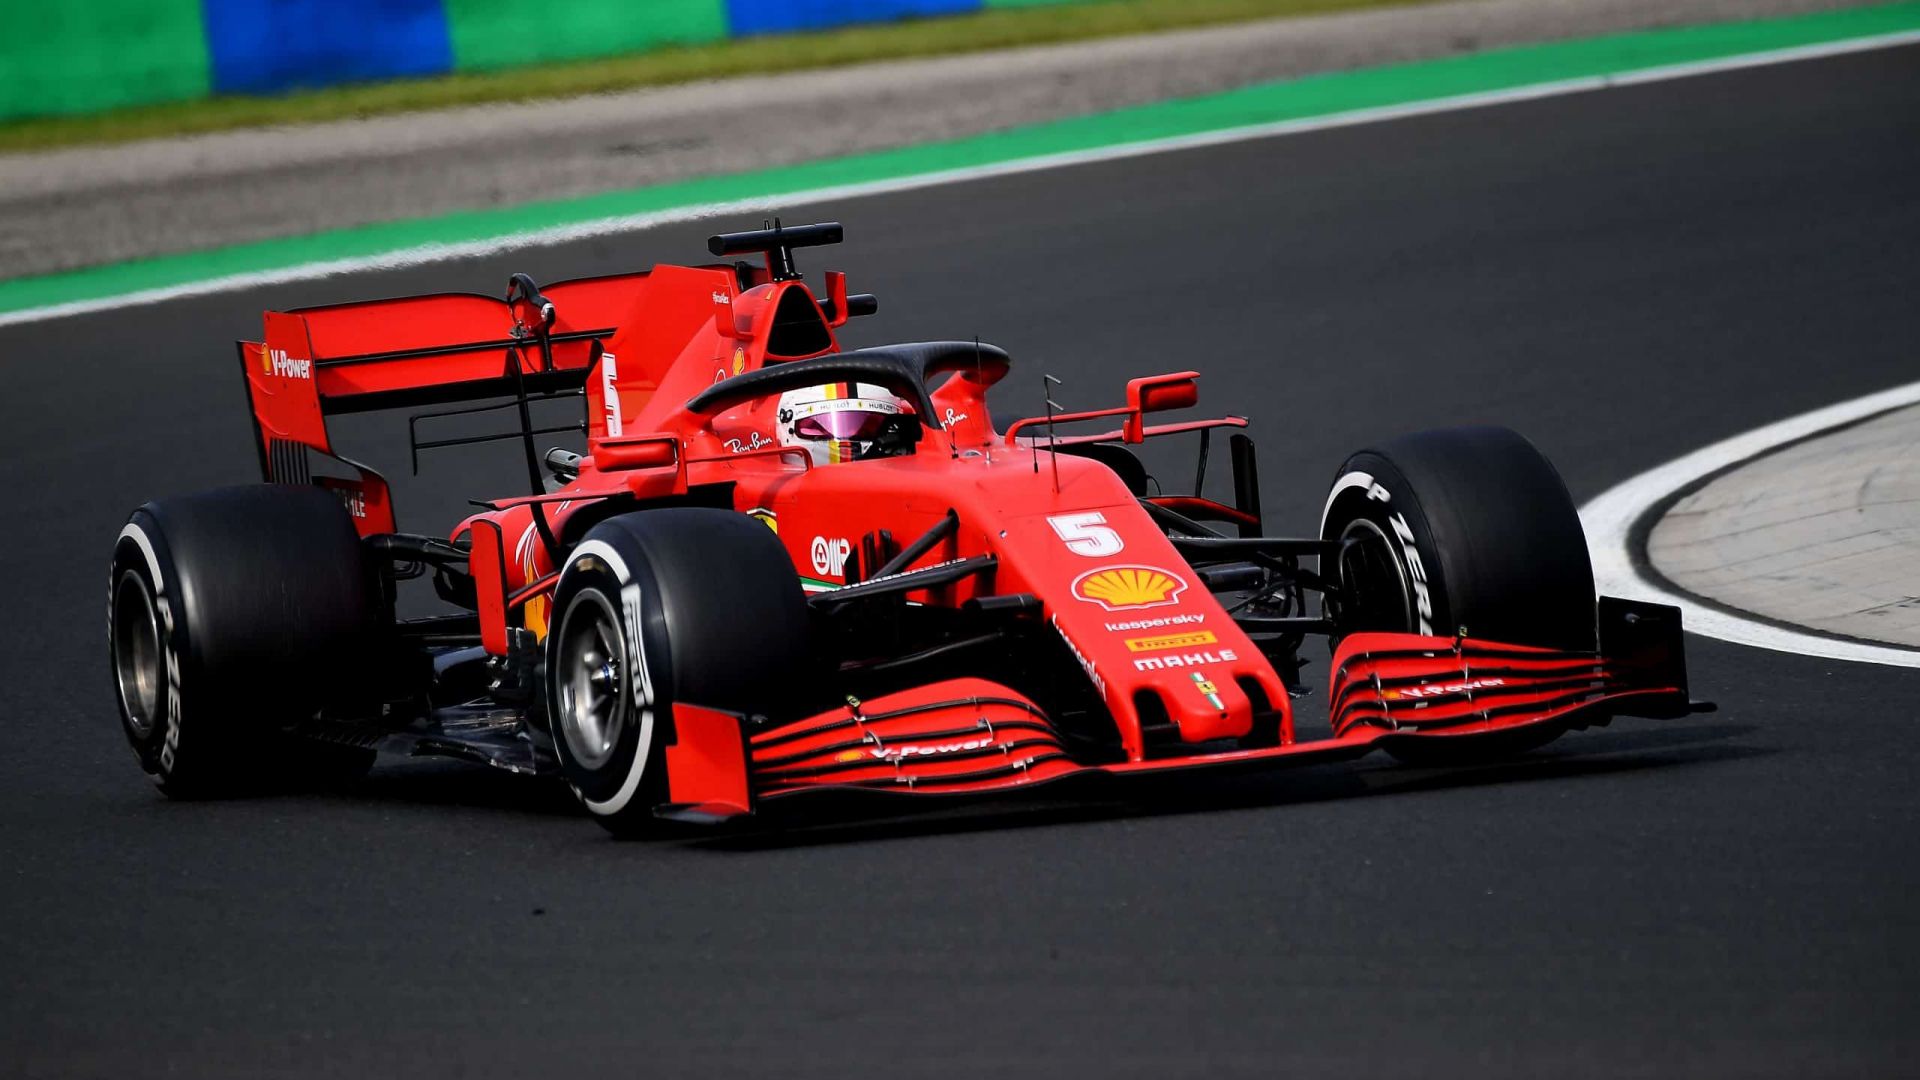 Ferrari in 2020